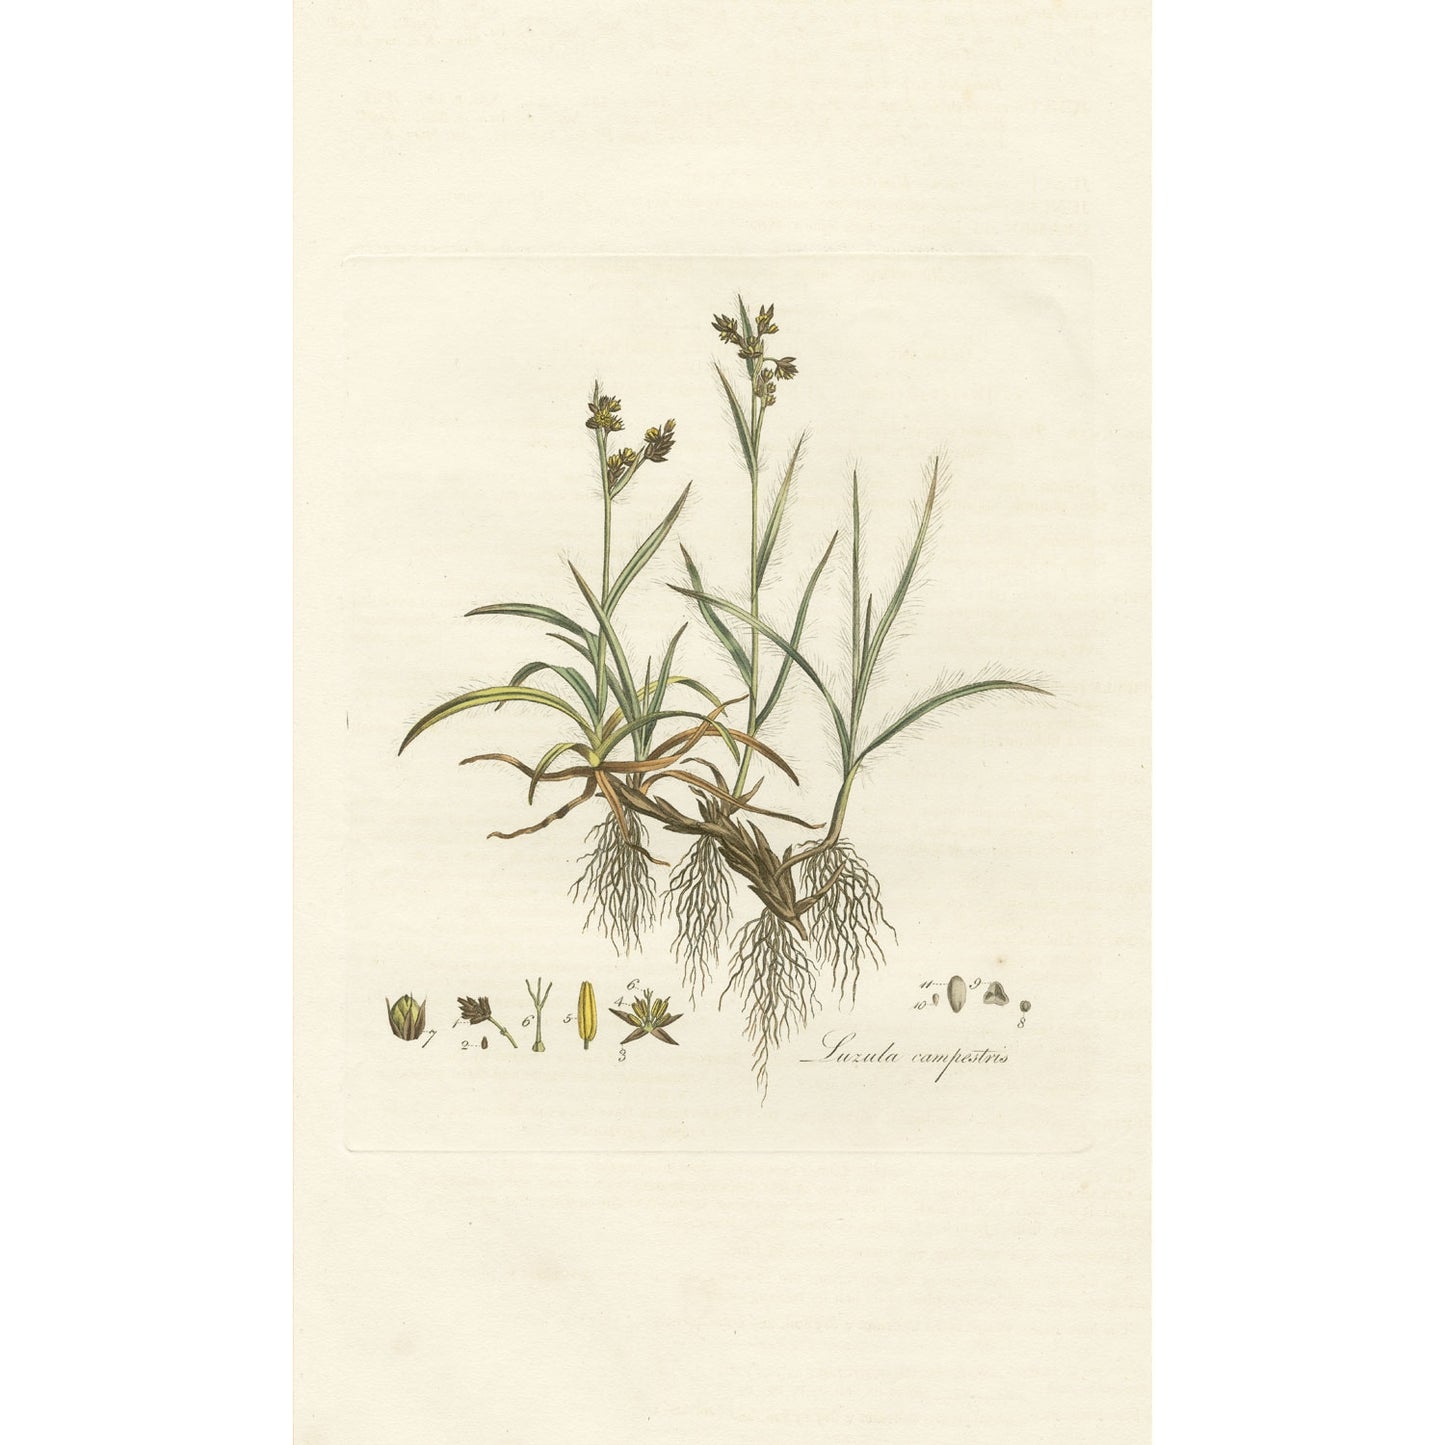 Luzula campestris ‘Flora Londinensis’ Botanical Print